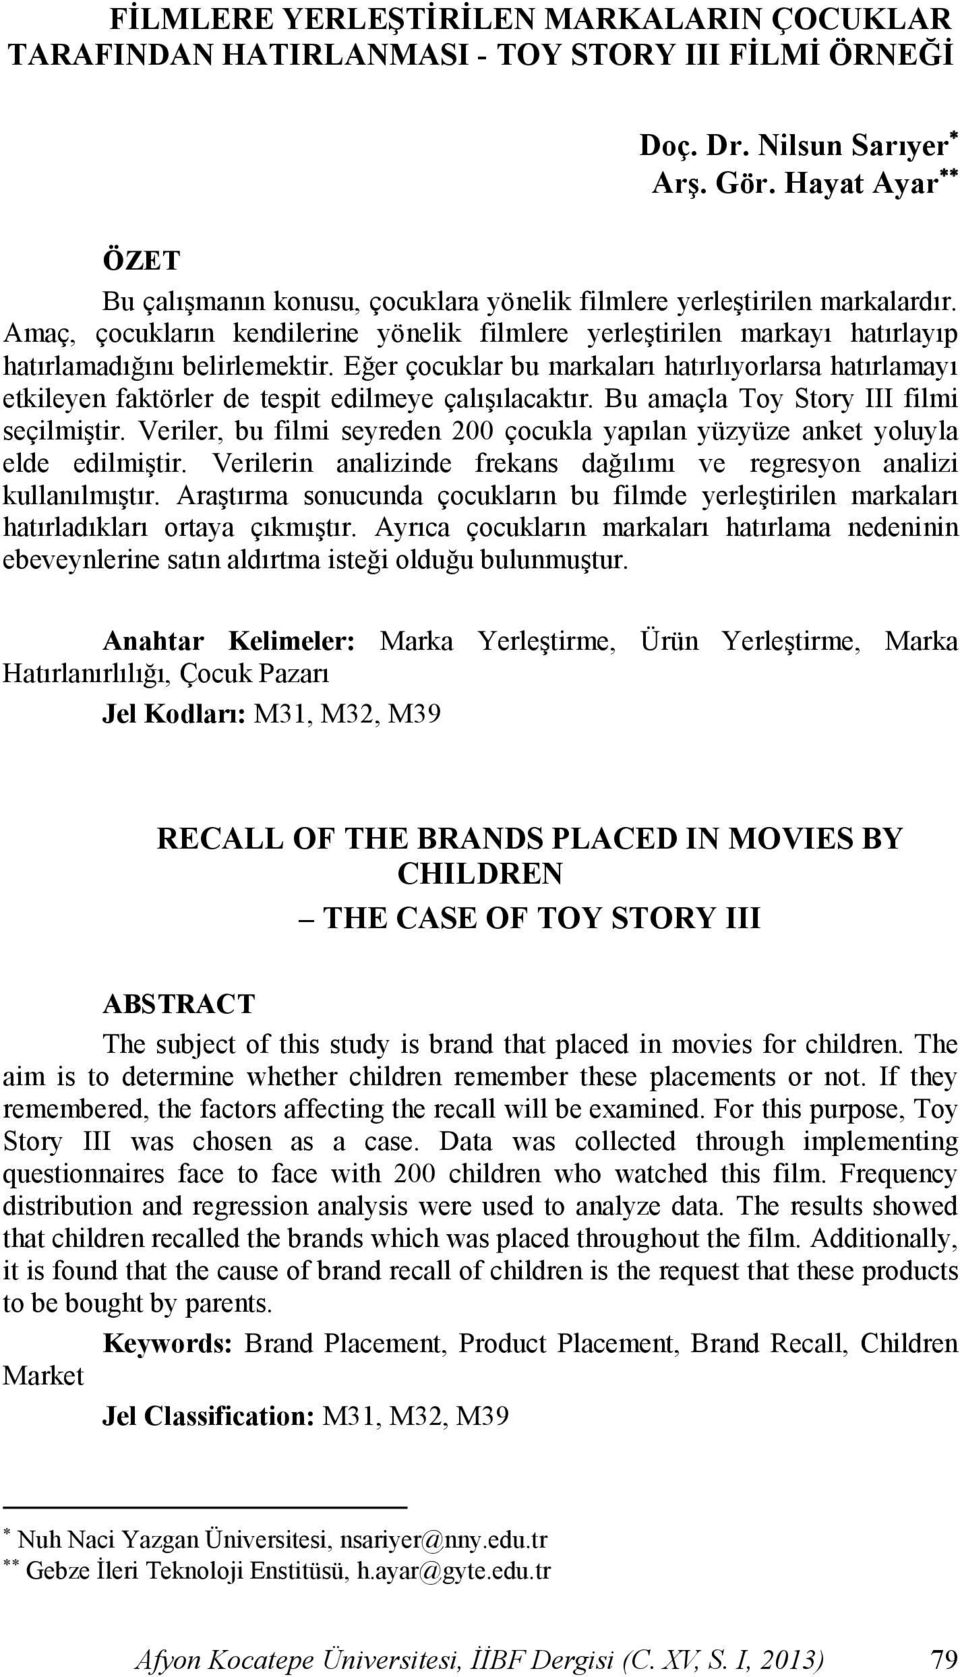 Amaç, çocukların kendilerine yönelik filmlere yerleģtirilen markayı hatırlayıp hatırlamadığını belirlemektir.